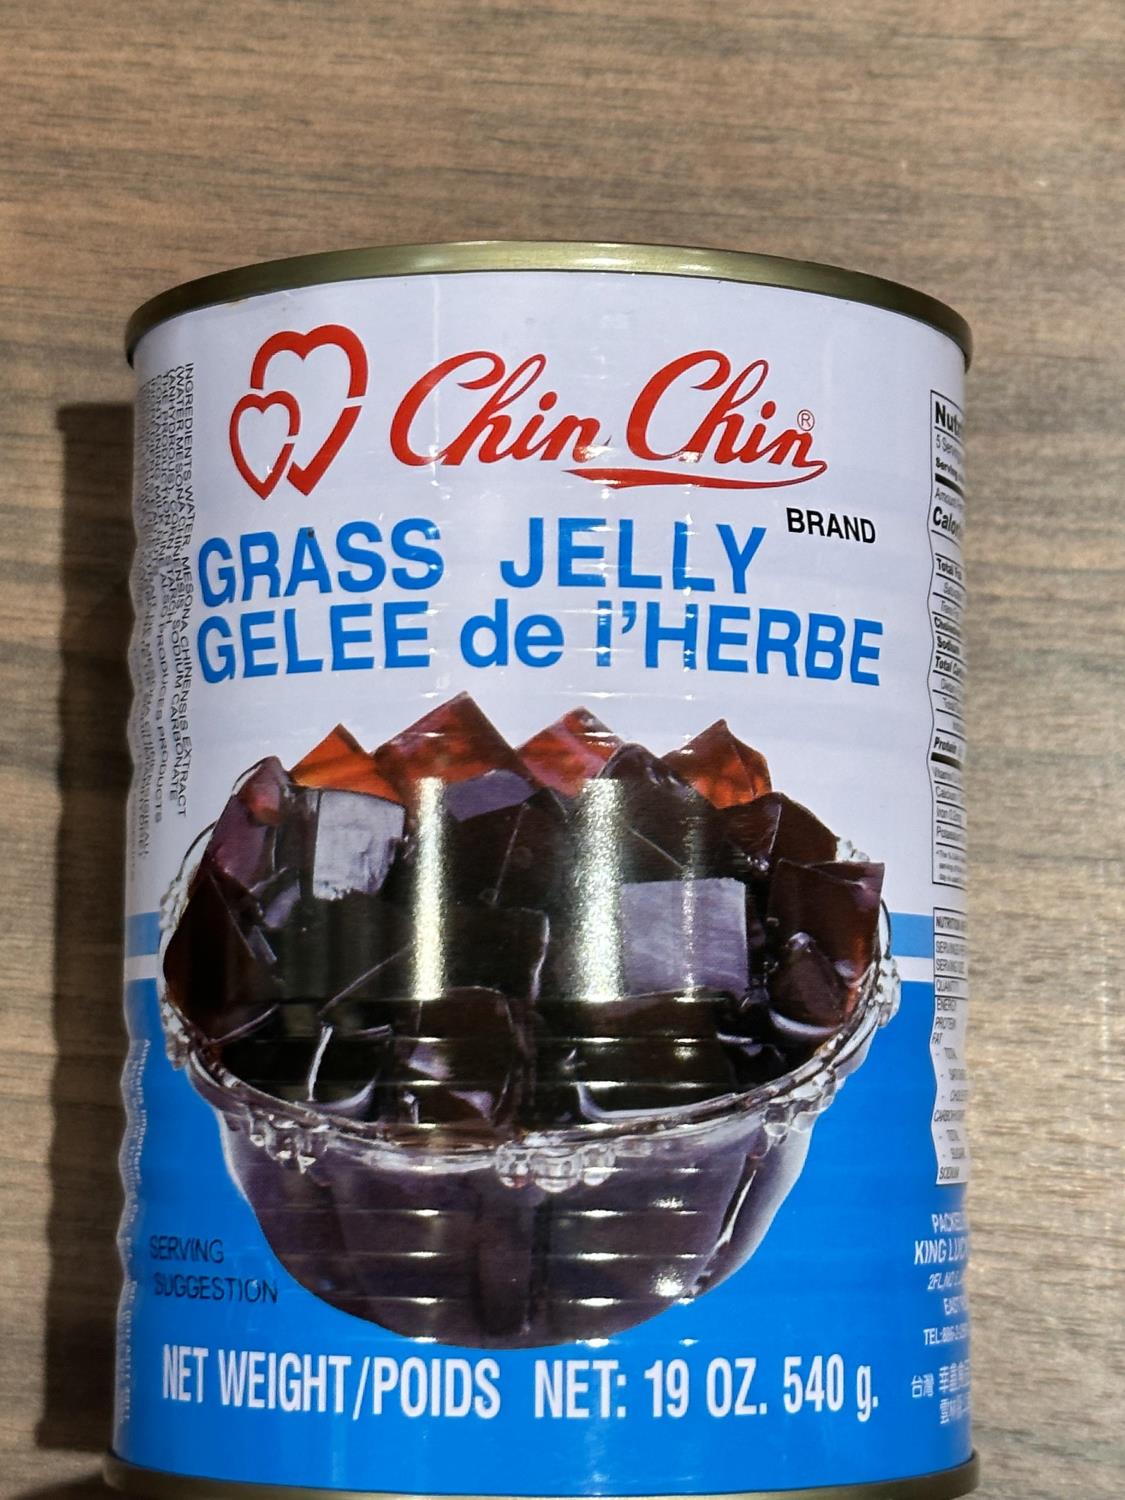 Chinchin Grass Jelly